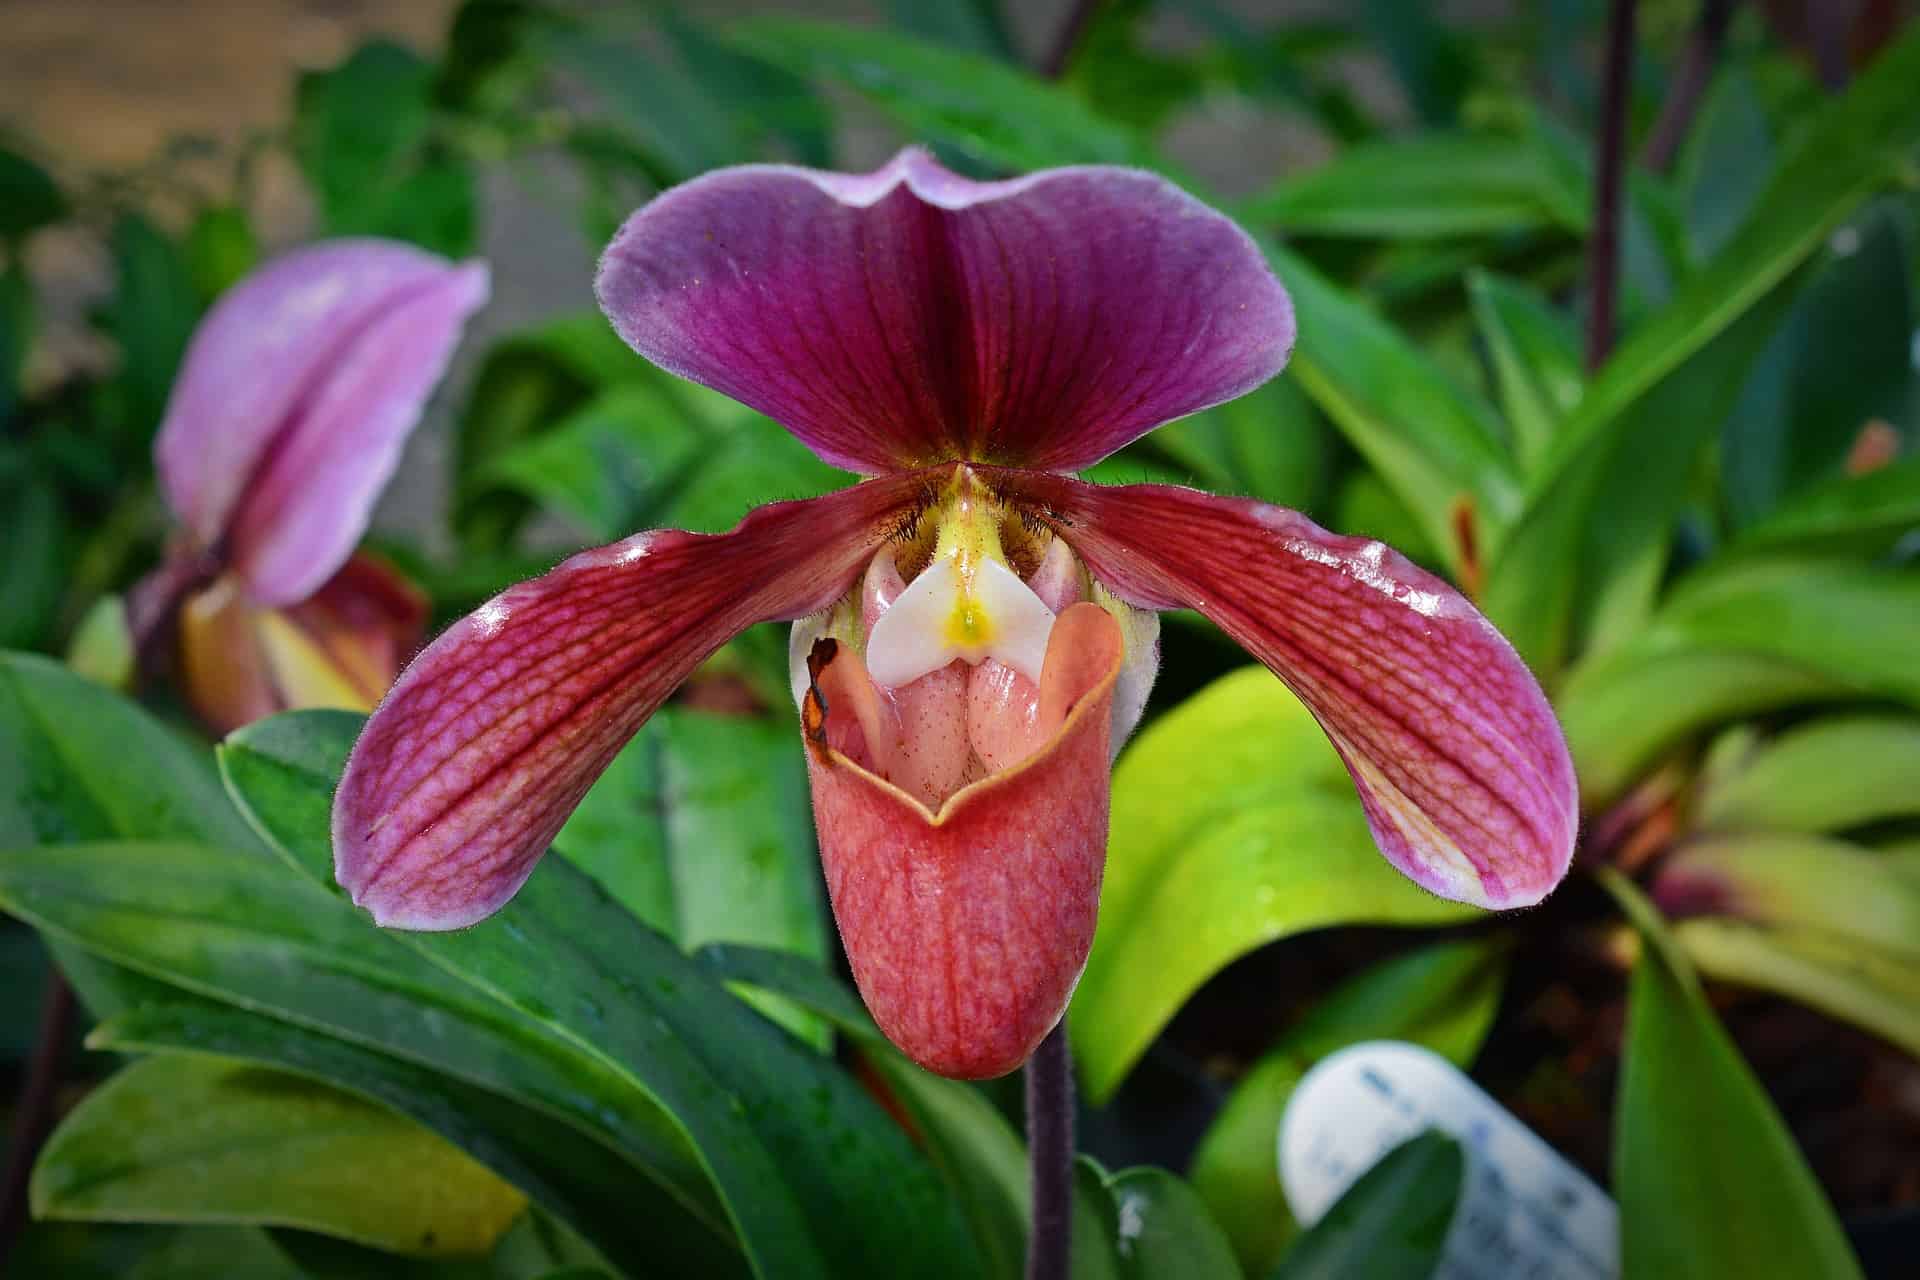 As orquídeas pertencem à uma das maiores famílias botânicas, podendo ter como identificar orquideas pelas folhas.